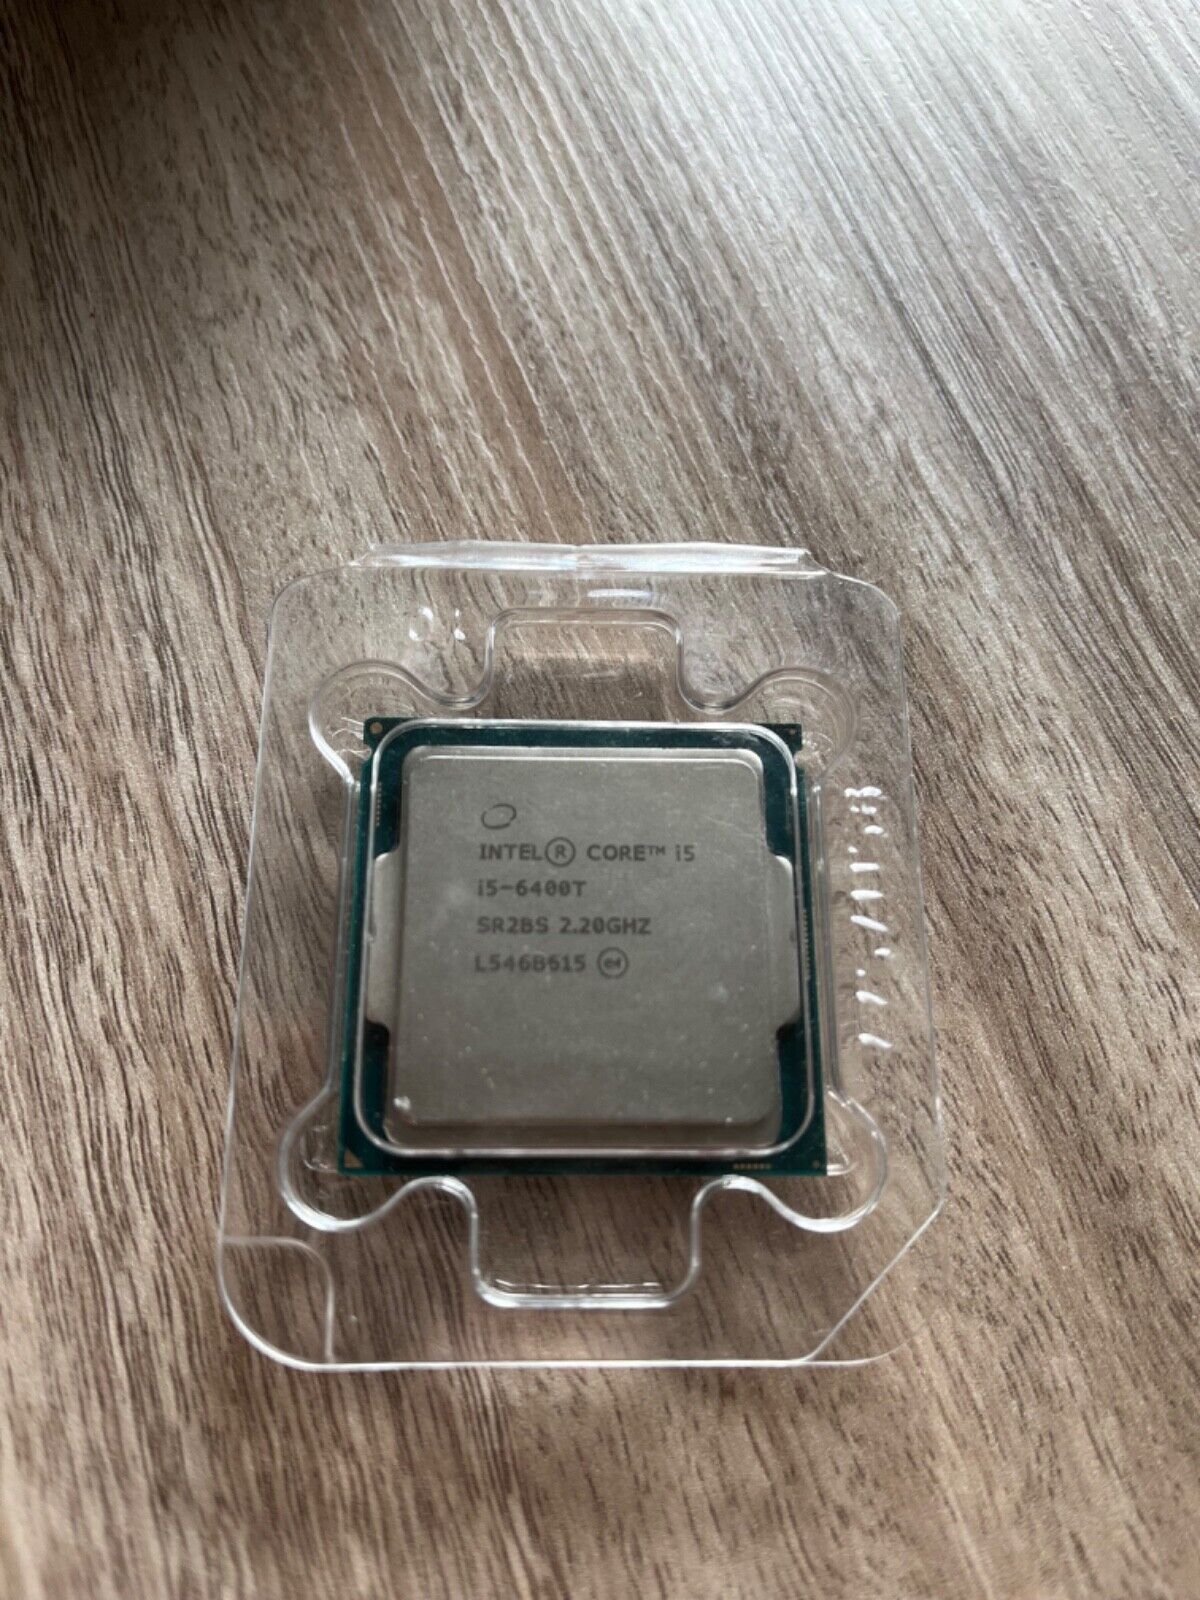 Intel Core i5-6400T Quad-Core 2.20GHz LGA1151 Desktop Processor (SR2BS)